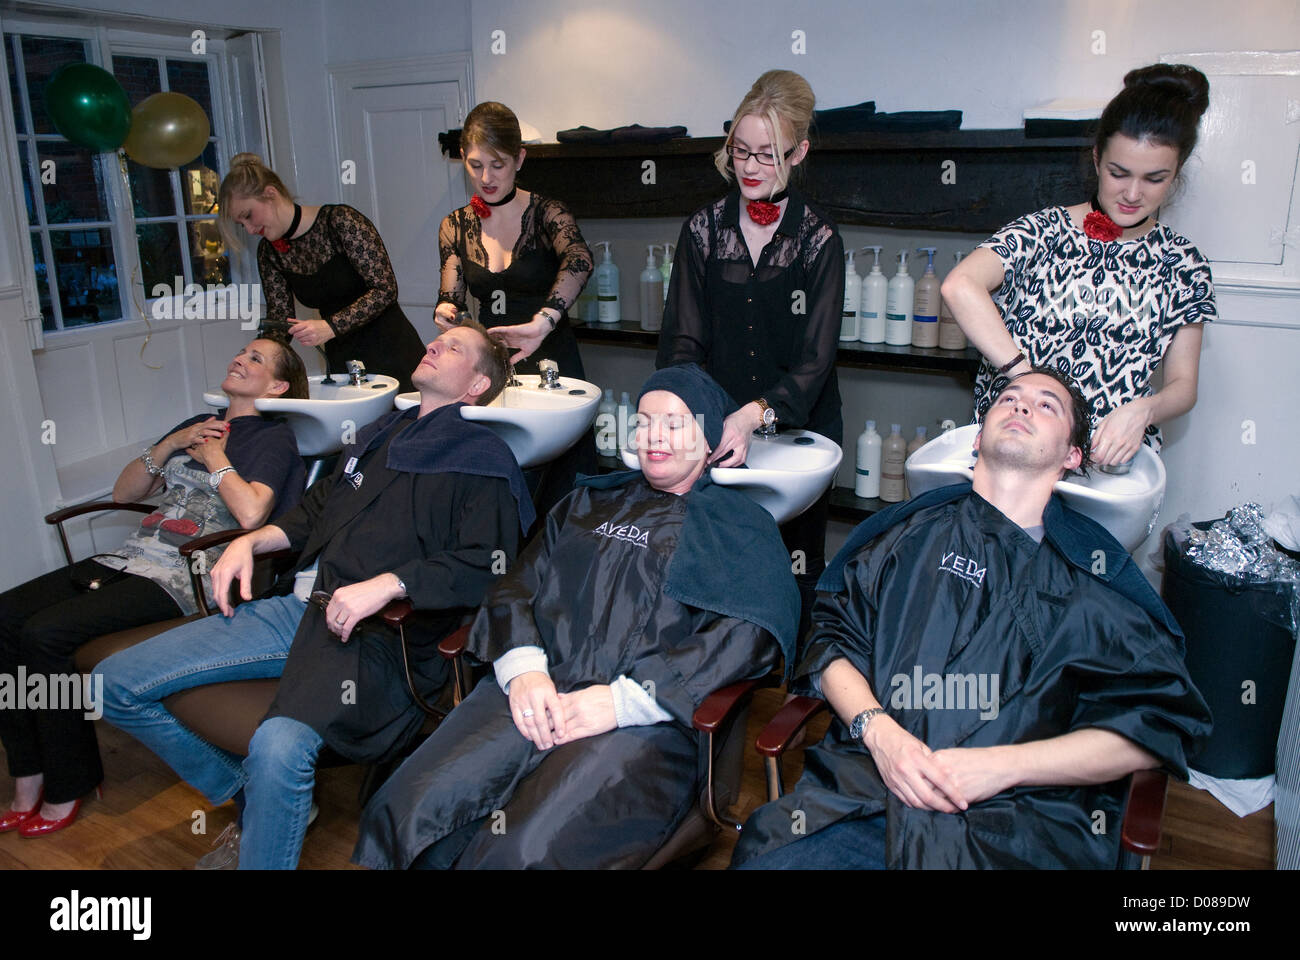 Les clients de coiffure cheveux lavés avant d'avoir leur coupe de cheveux, Farnham, Surrey, Royaume-Uni. Banque D'Images